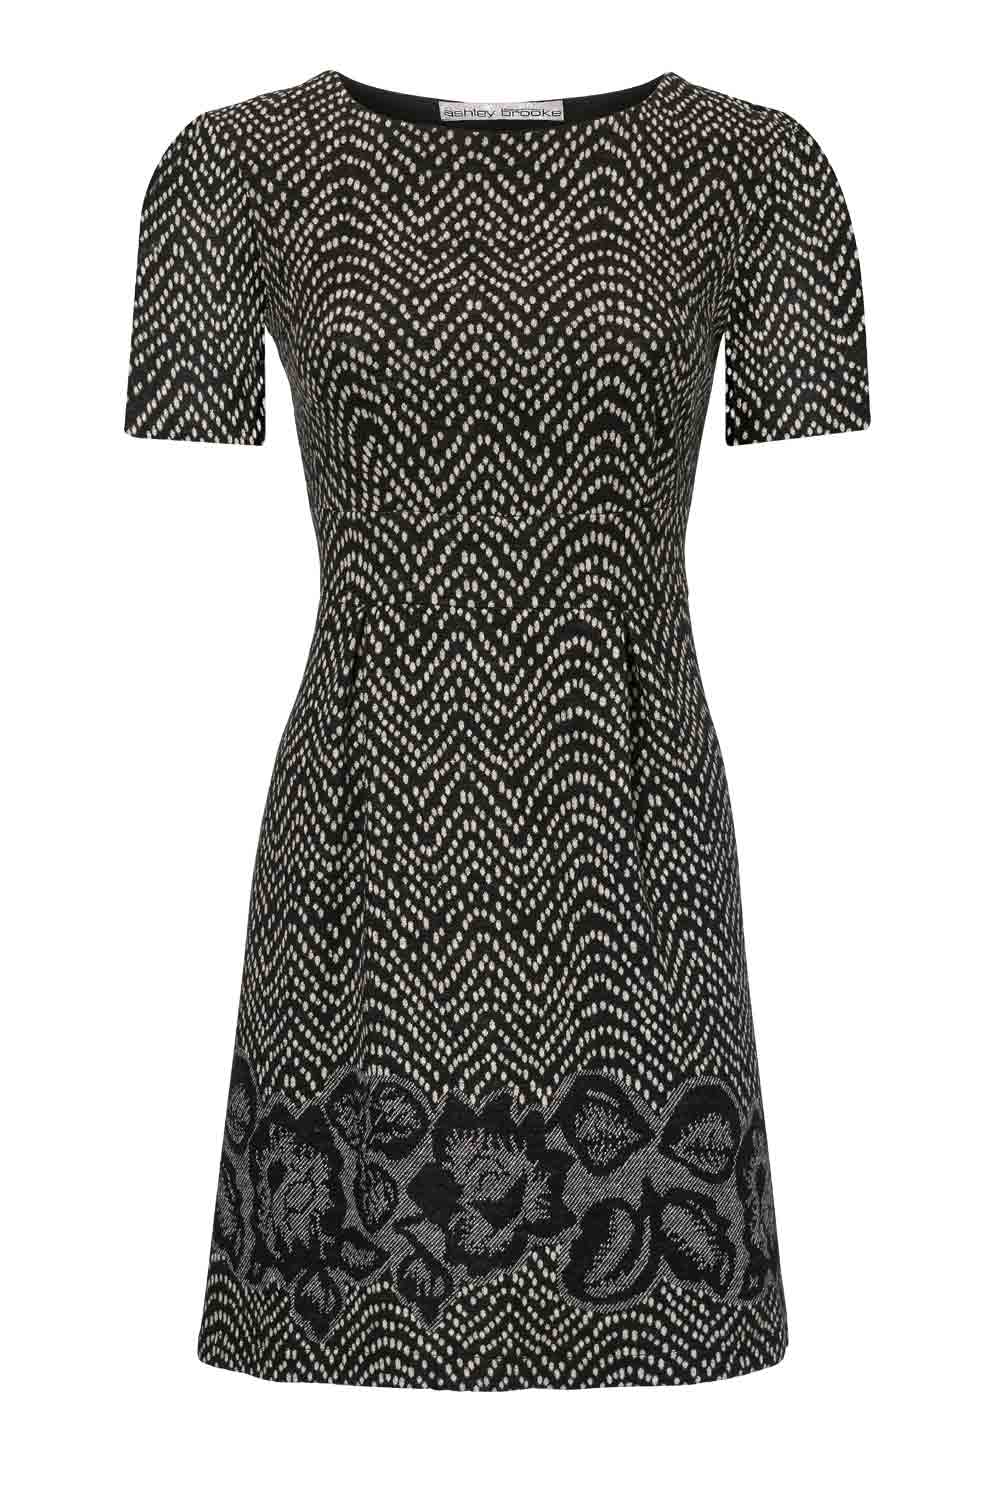 Ashley Brooke Damen Designer-Kleid, schwarz-creme